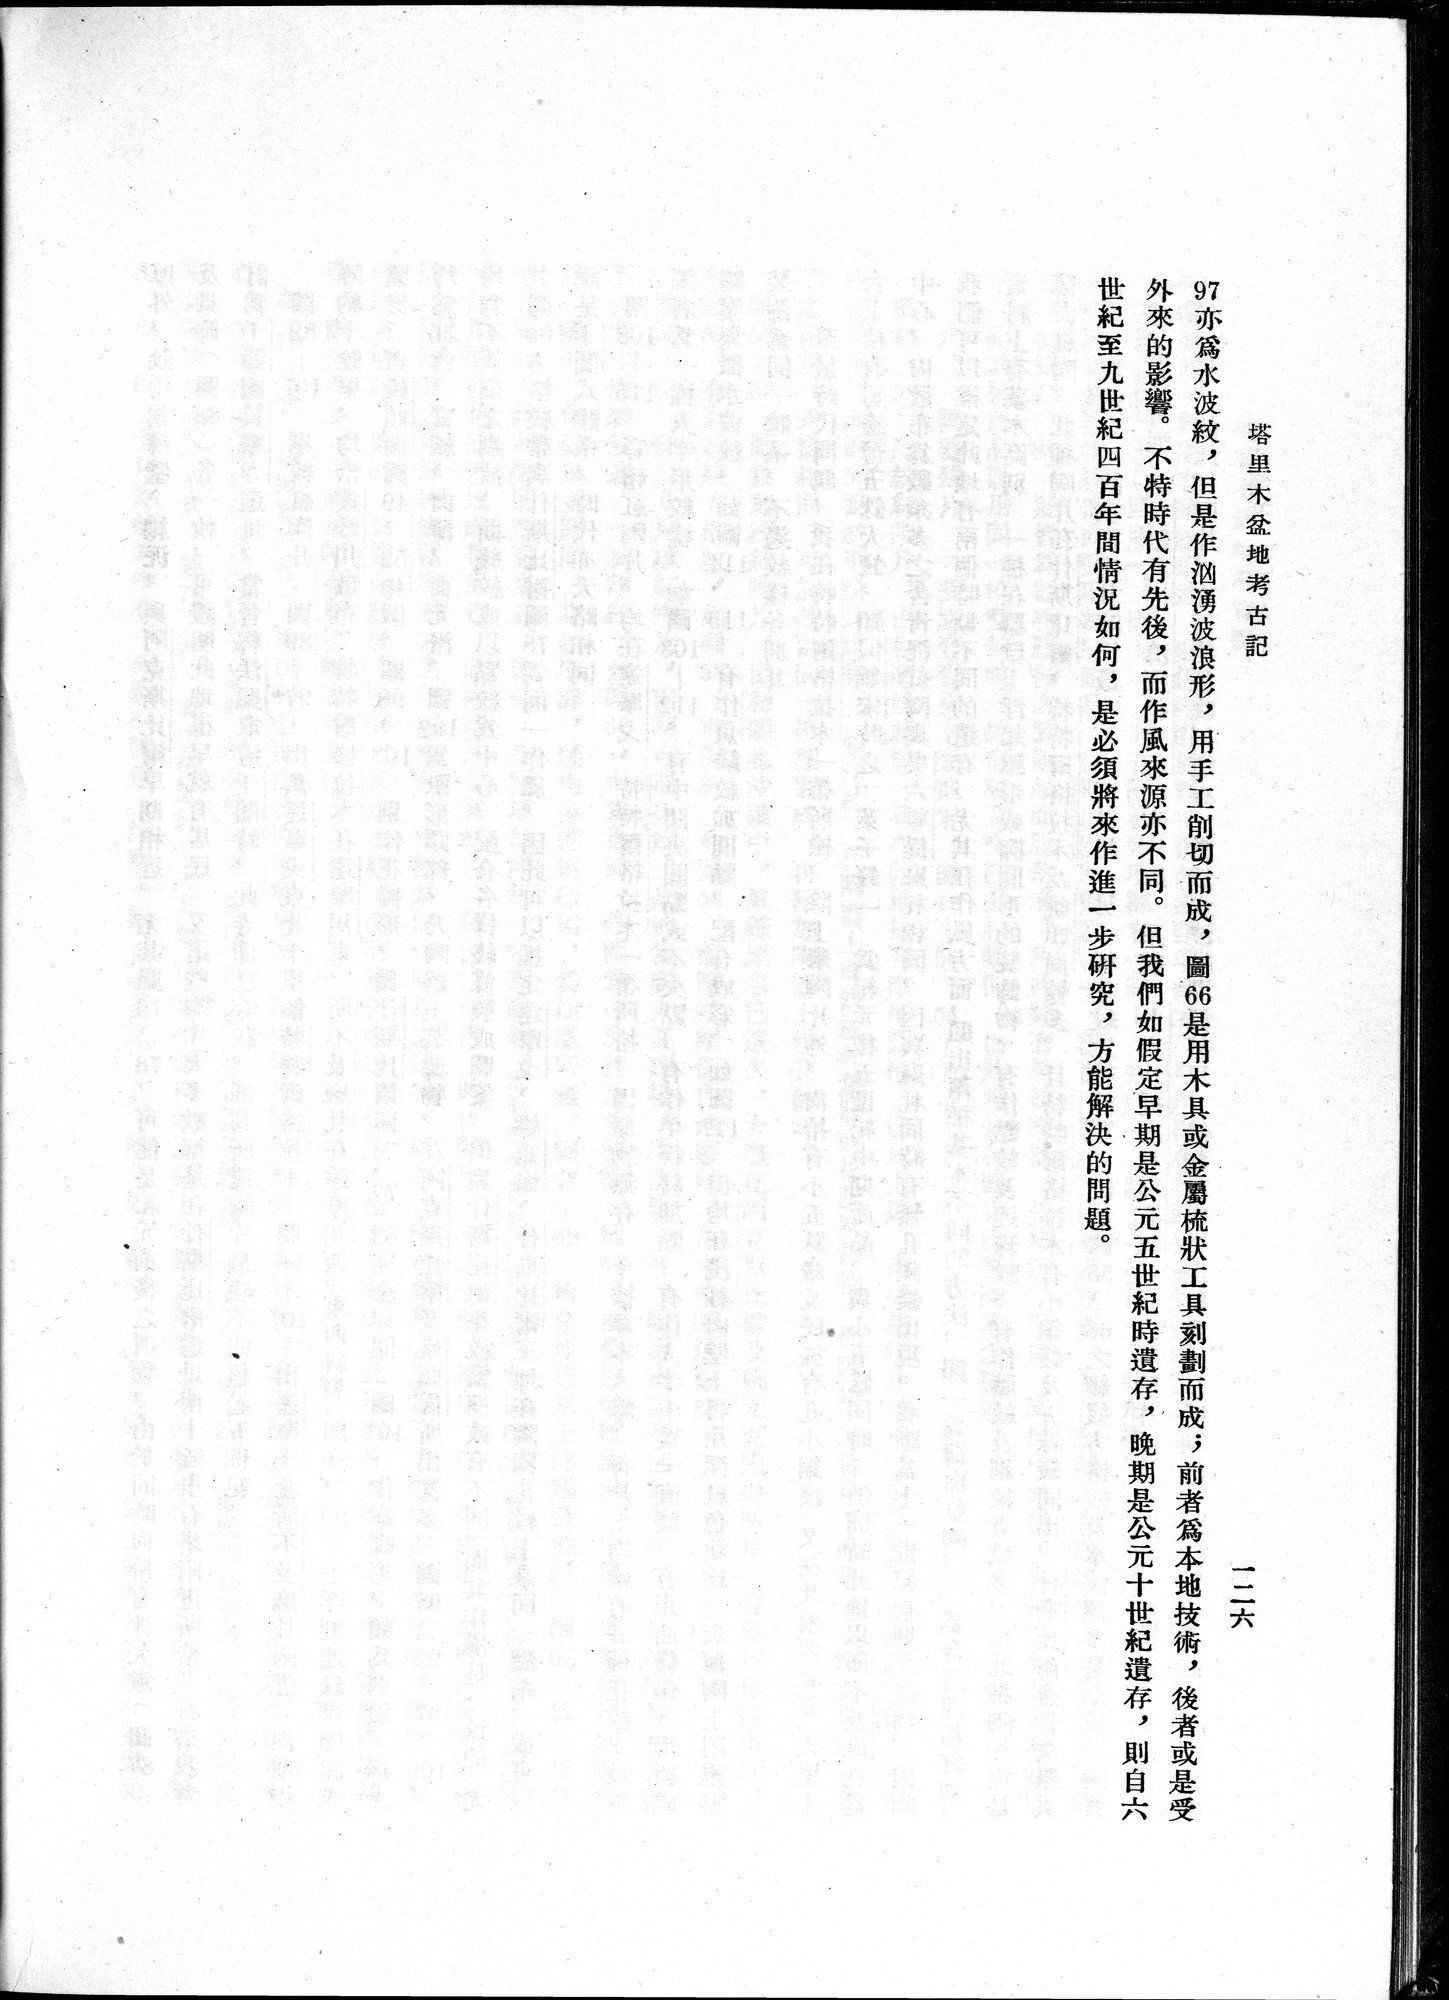 塔里木盆地考古記 : vol.1 / 190 ページ（白黒高解像度画像）